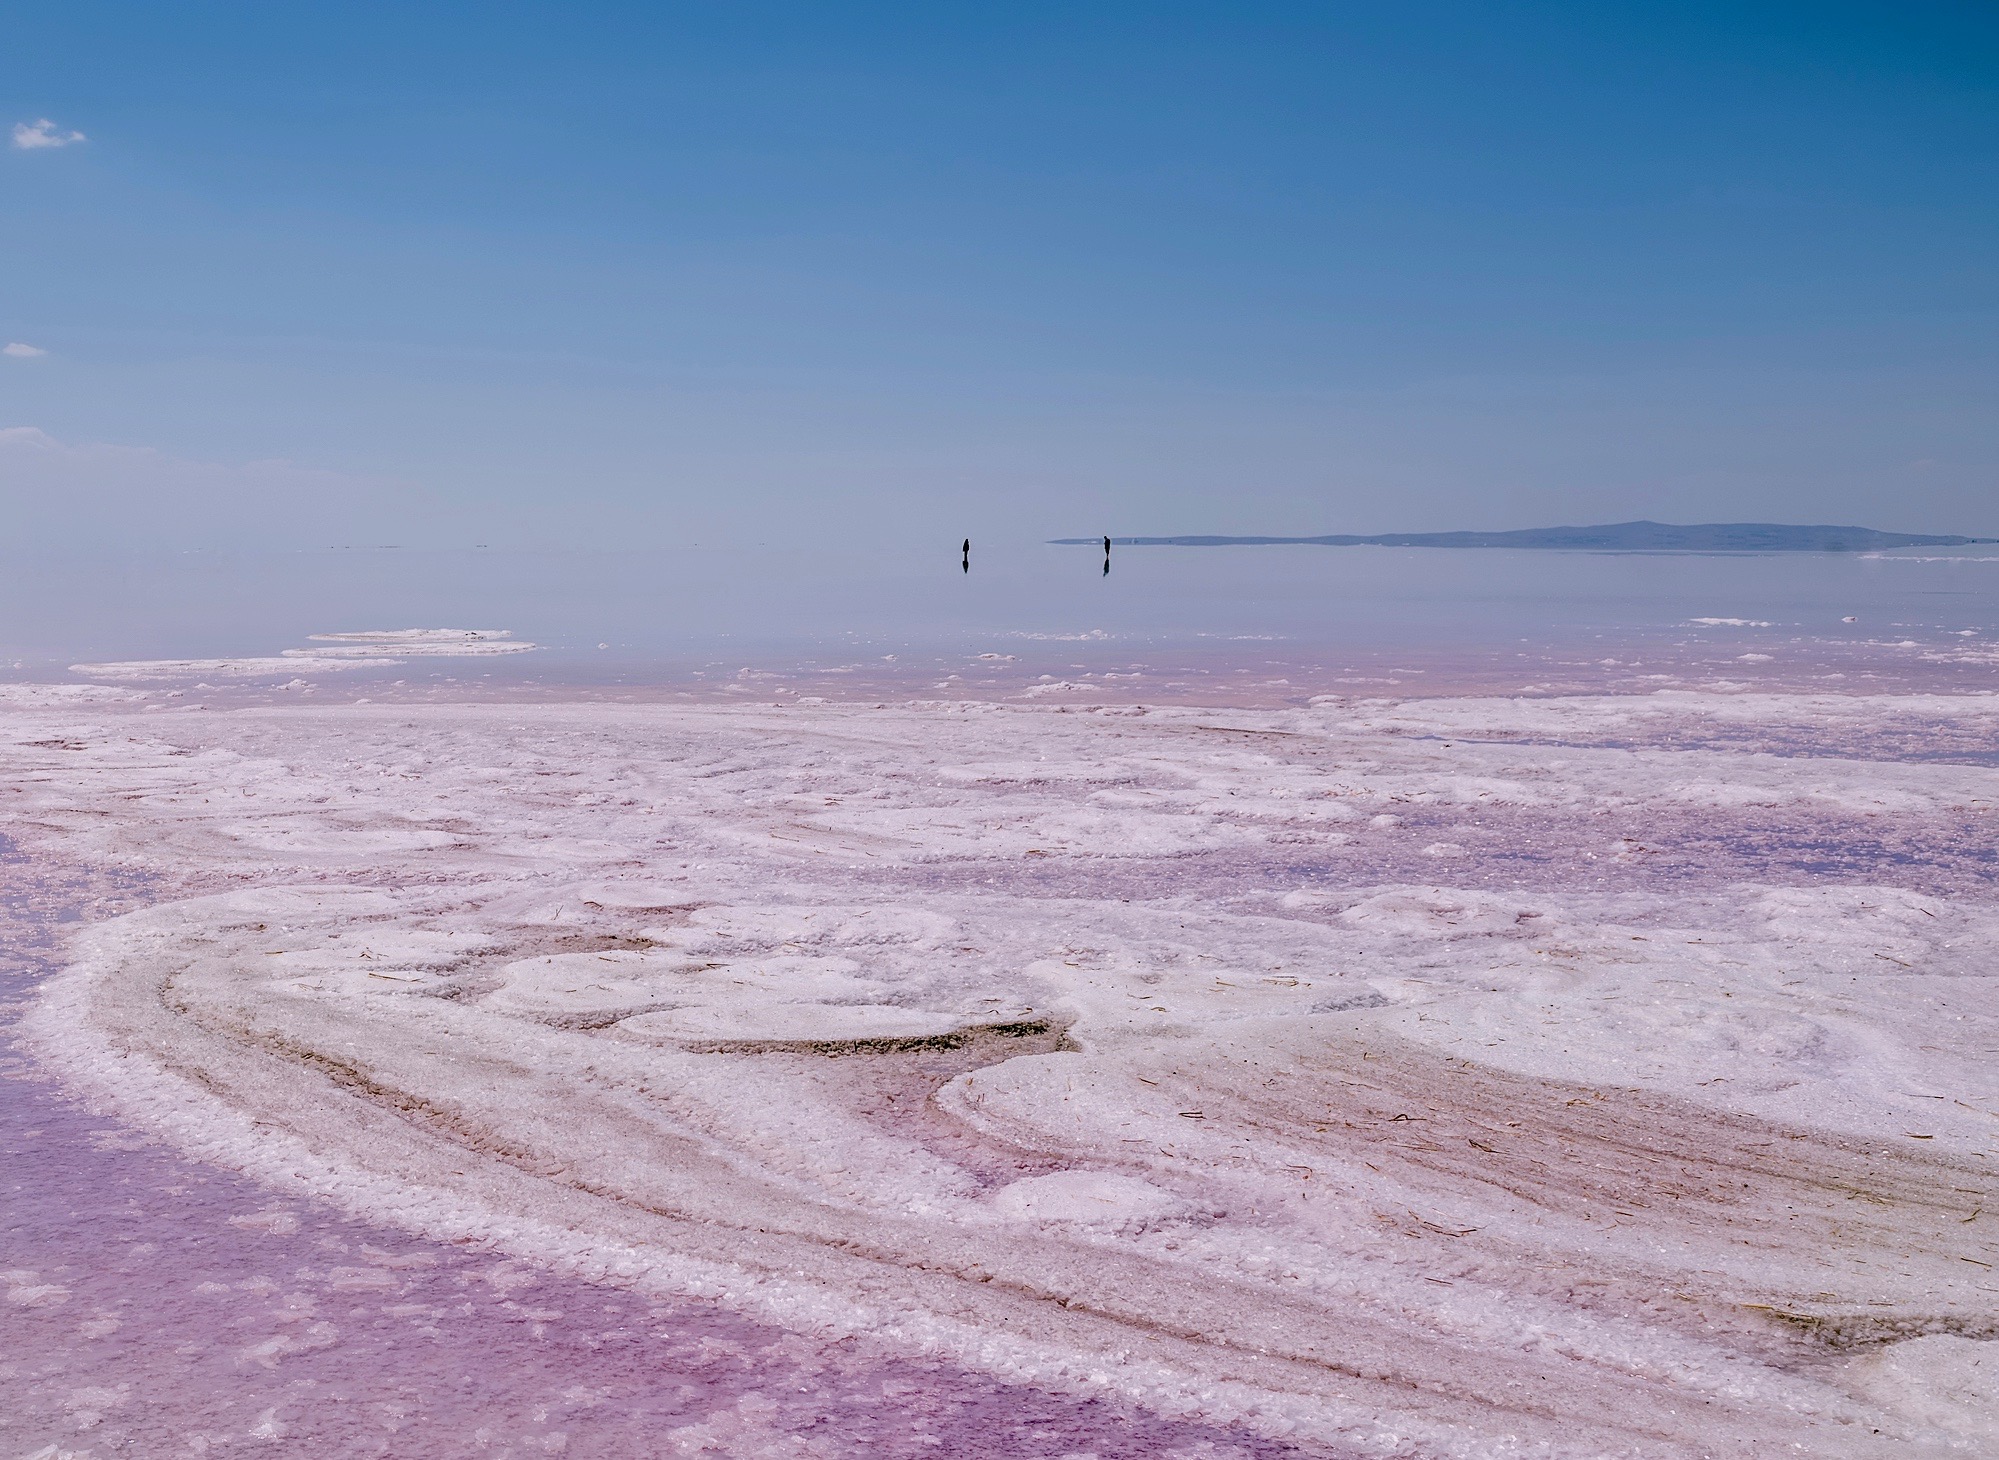 Tuz Gölü – Pink Salt Lake, Turkey